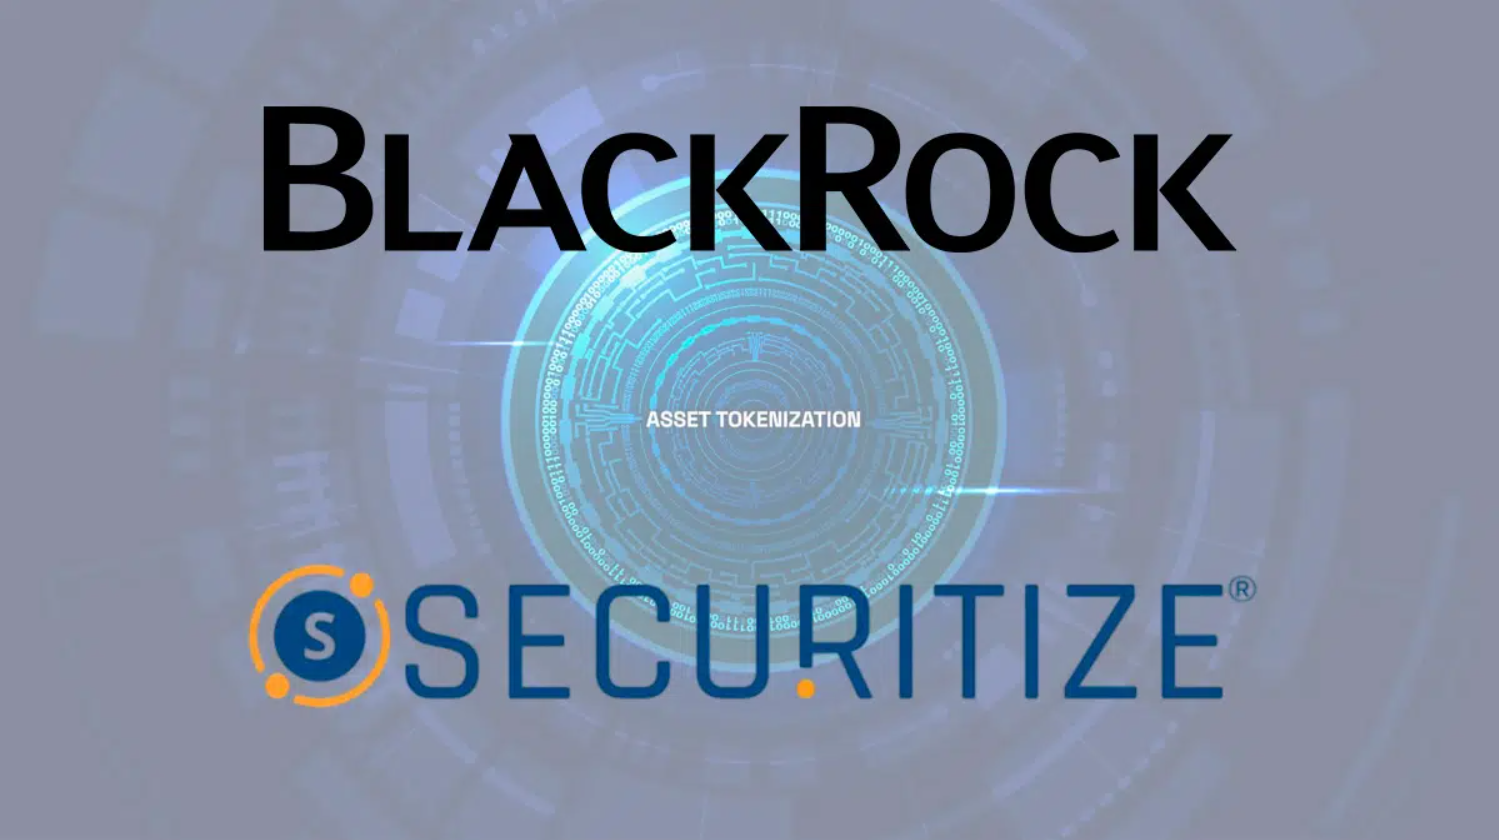 Nền tảng chứng khoán kỹ thuật số Securitize huy động được 47 triệu USD do BlackRock dẫn đầu